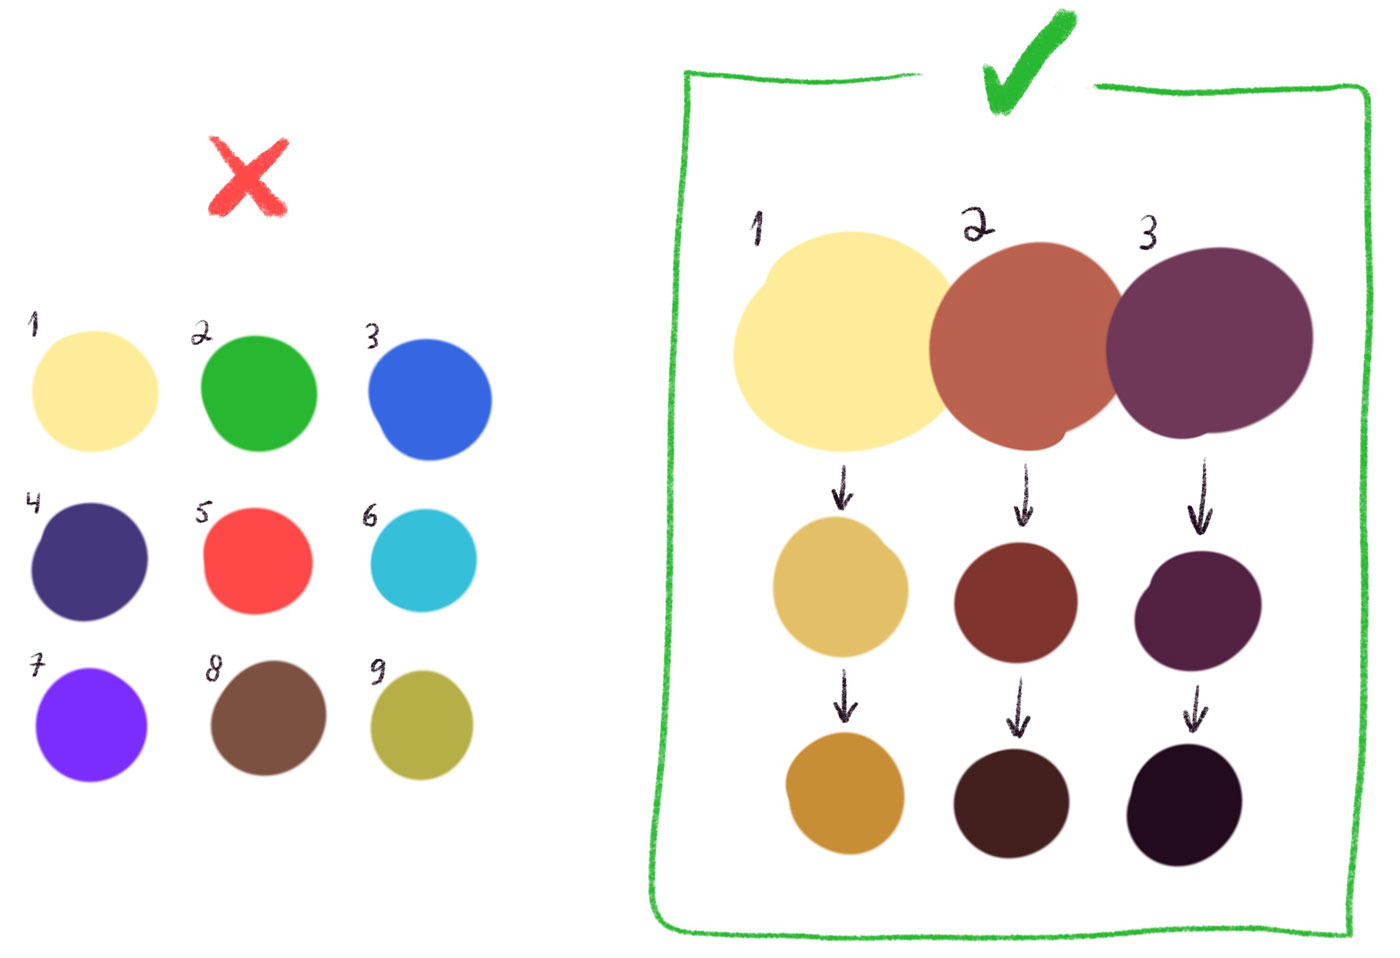 Какие цвета смешать чтоб получить коричневый цвет. Смешение цветов красок таблица для детей. Смешение красок для дошкольников. By 3 палитра. Mixing Colors for Kids.